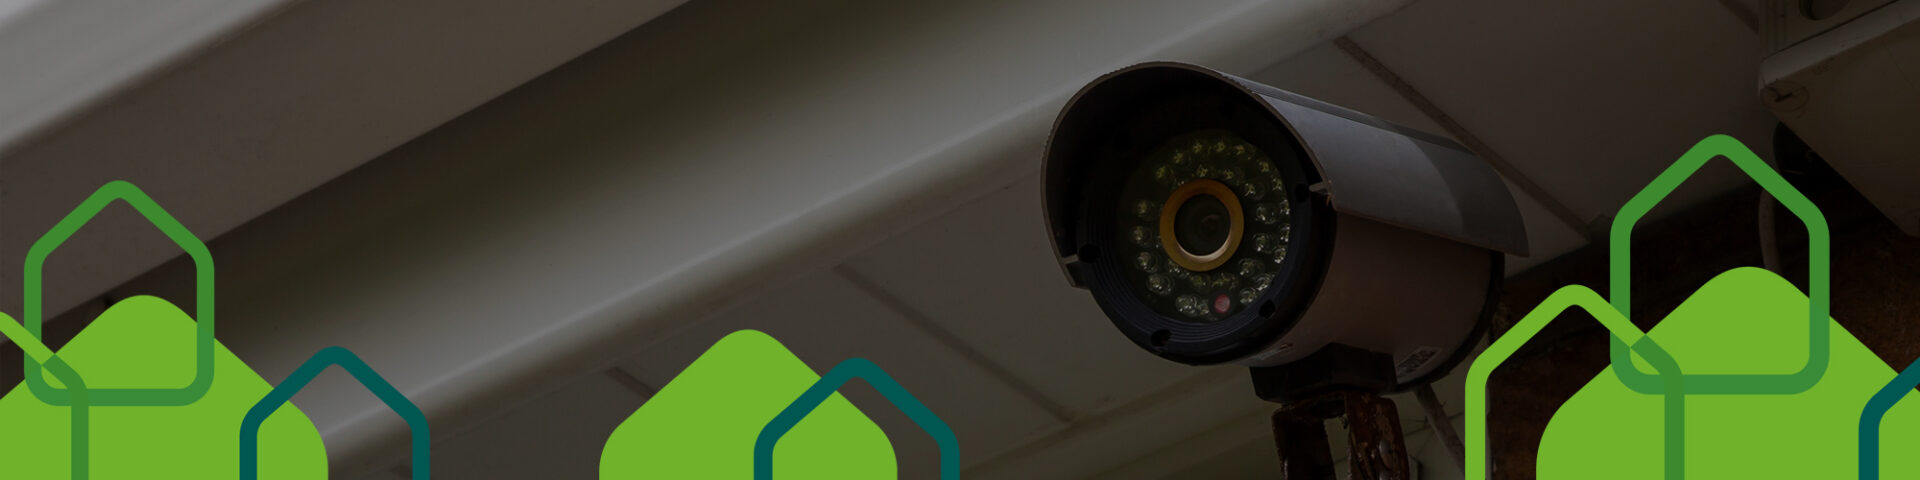 CCTV camera and smart doorbell hero image